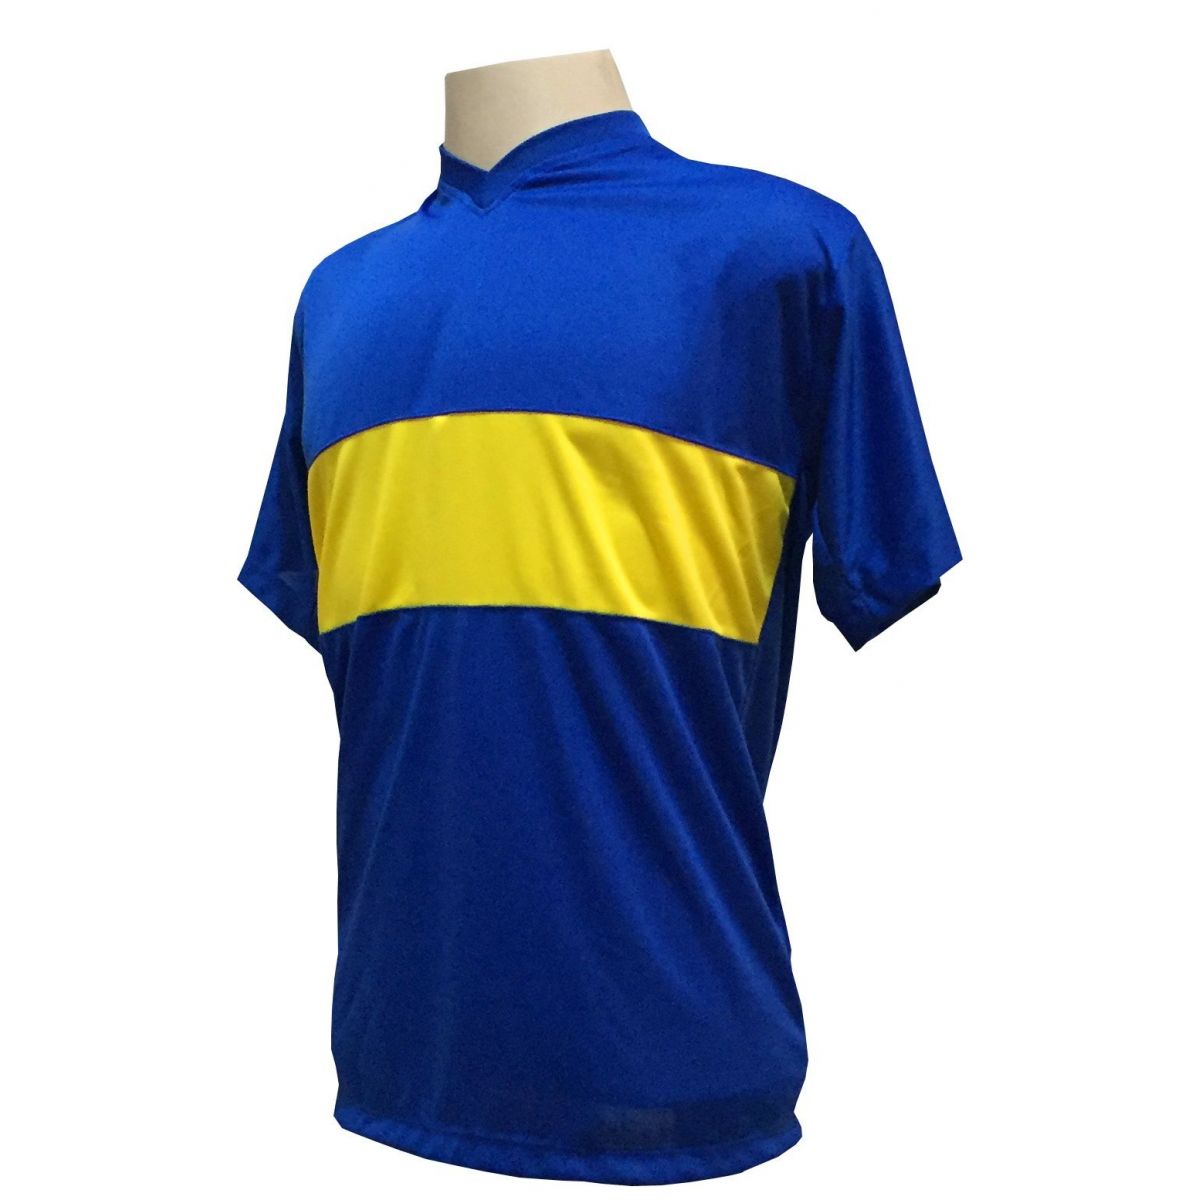 Uniforme Esportivo Completo modelo Boca Juniors 14+1 (14 camisas Royal/Amarelo + 14 calções Madrid Amarelo + 14 pares de meiões Amarelos + 1 conjunto de goleiro) + Brindes